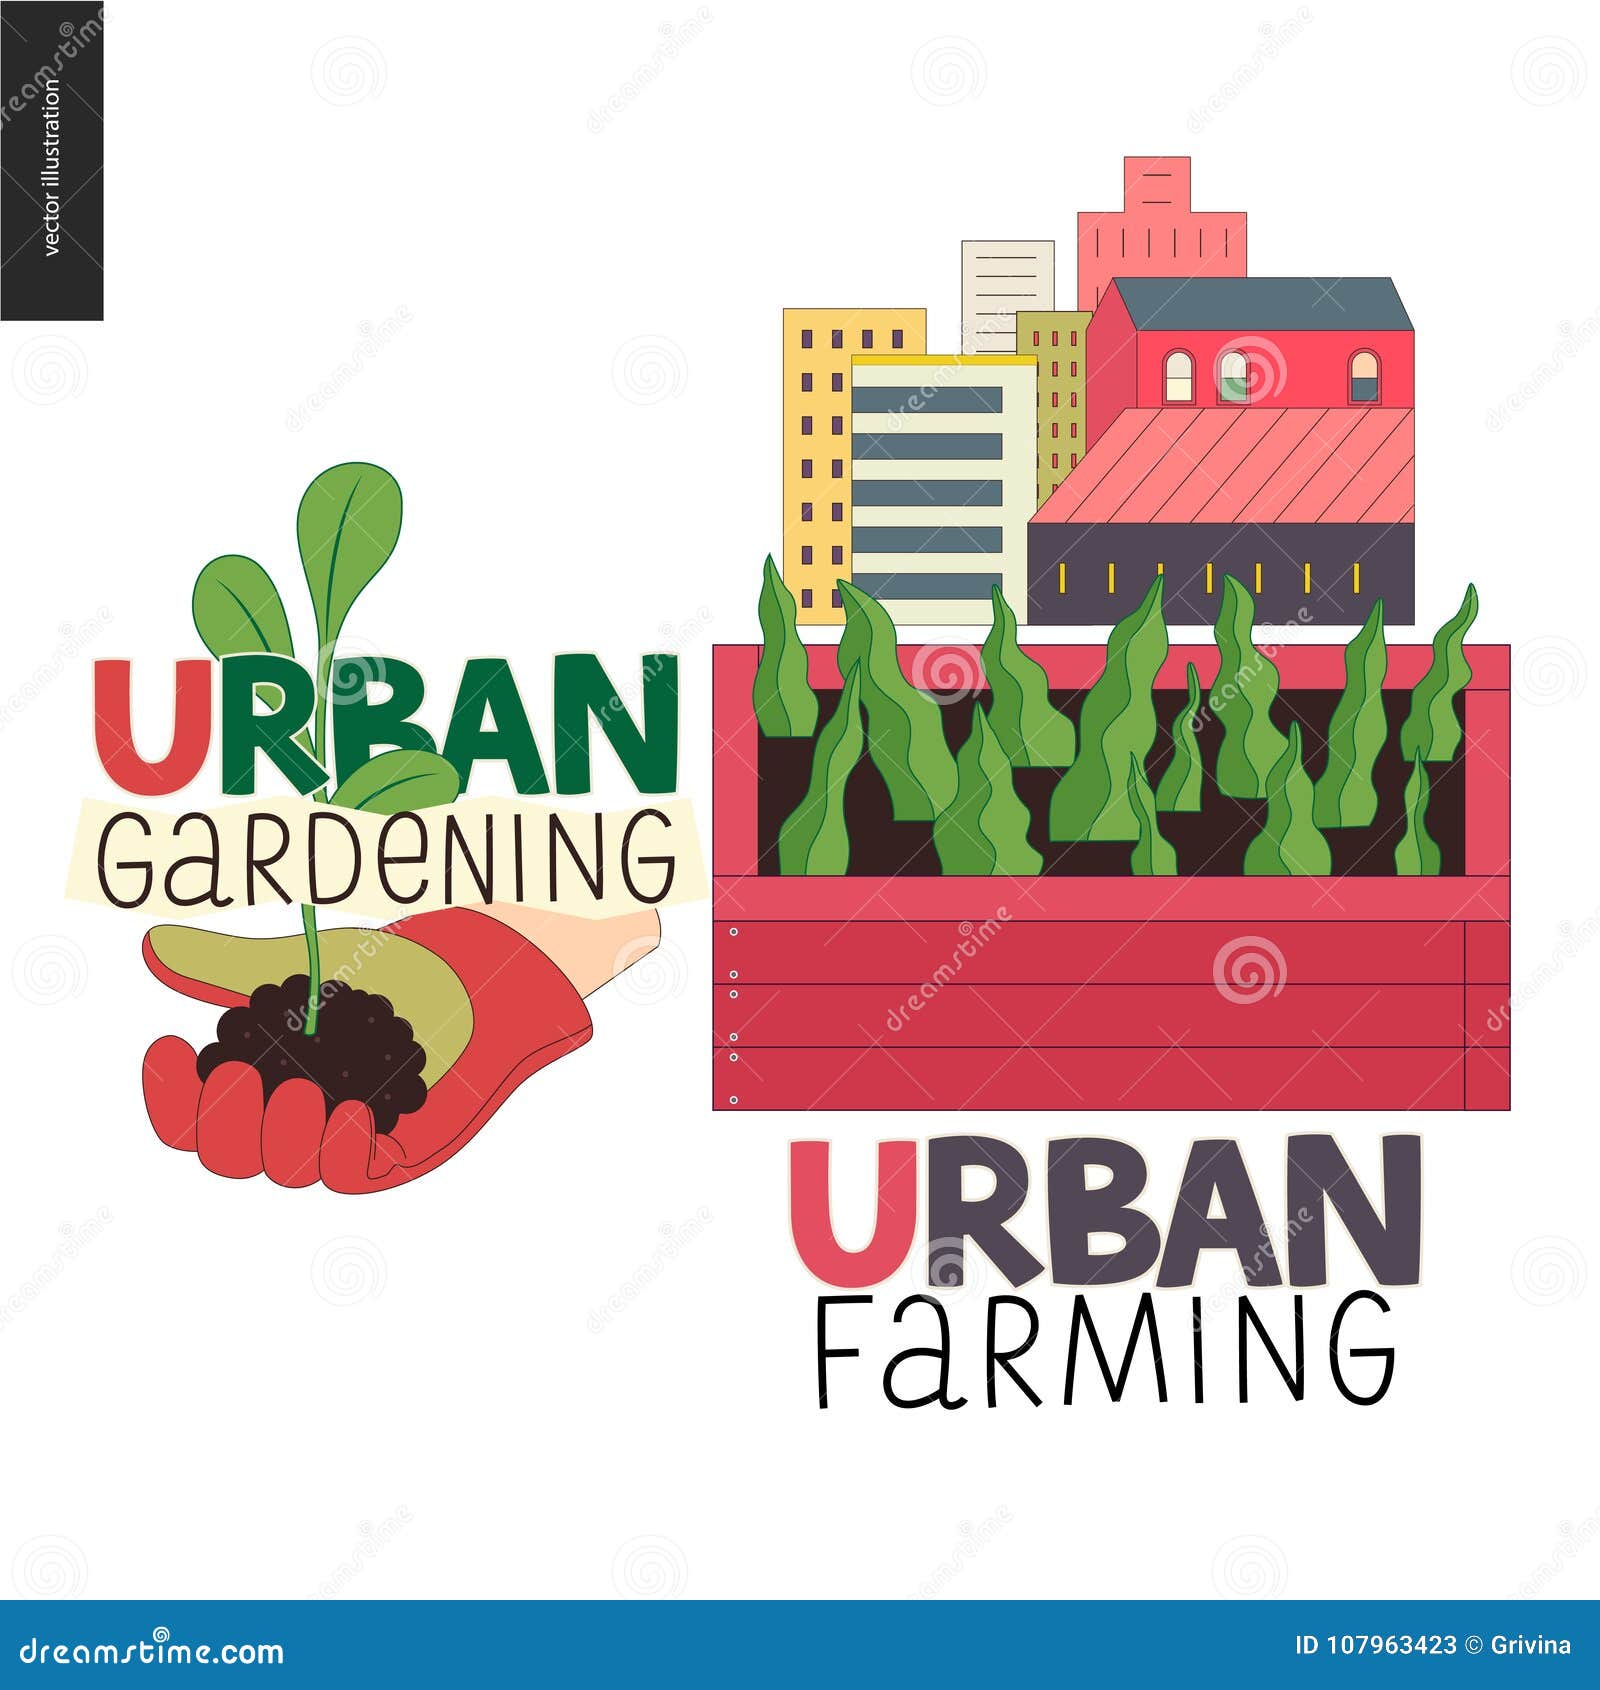 urban farming and gardening logos